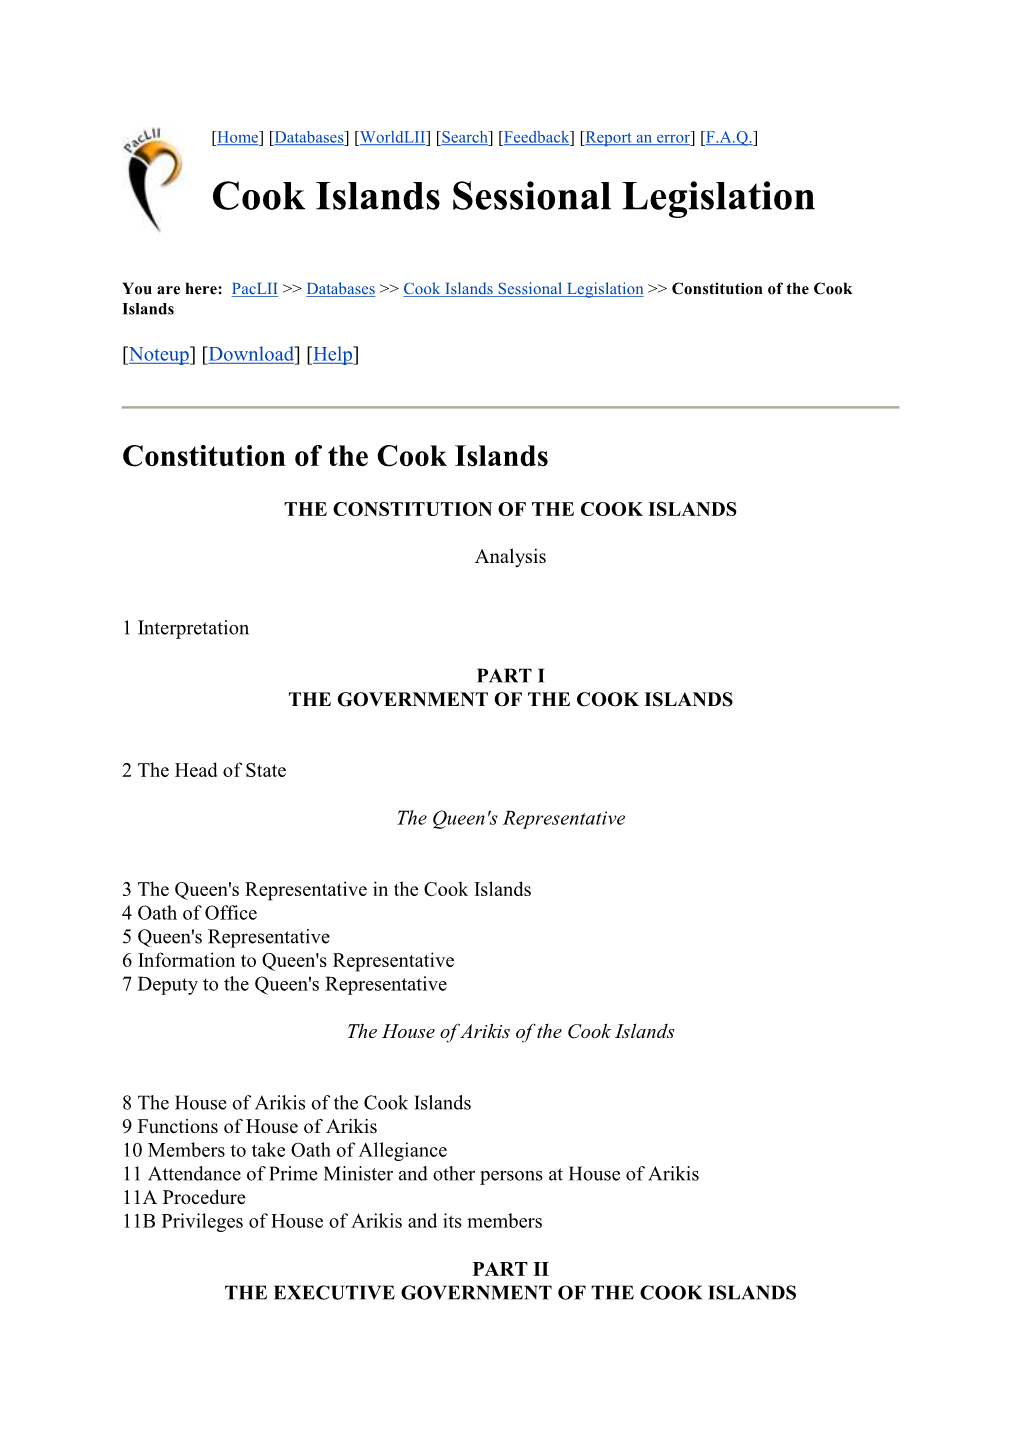 Cook Islands Constitution